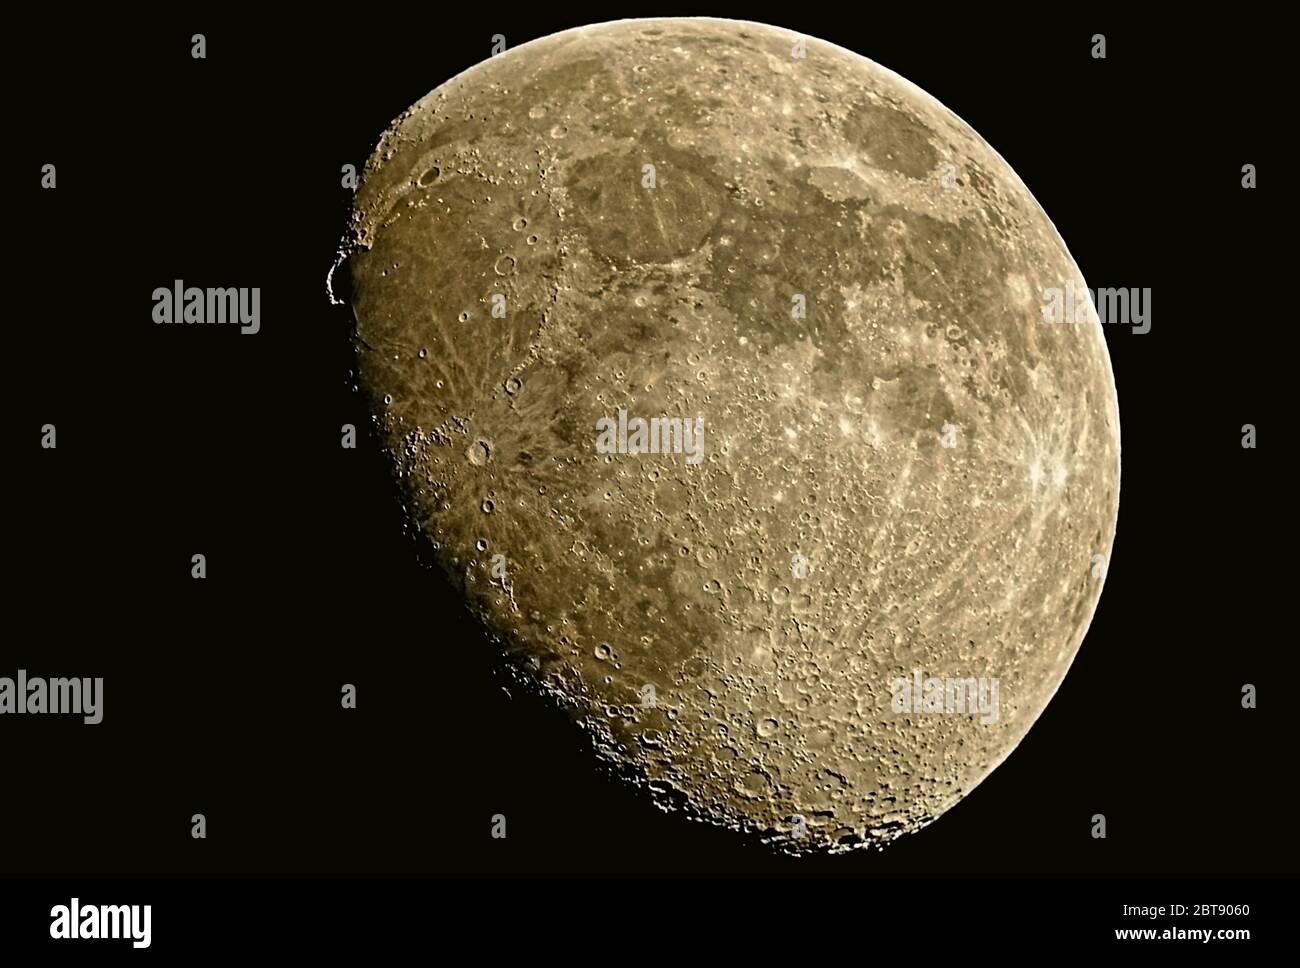 Der Mond in der zunehmenden Gibbos-Phase zeigt viele Meere (maria), Krater  und Berge. Aufgenommen durch ein 5-Zoll Schmidt-Cassegrain Teleskop  Stockfotografie - Alamy